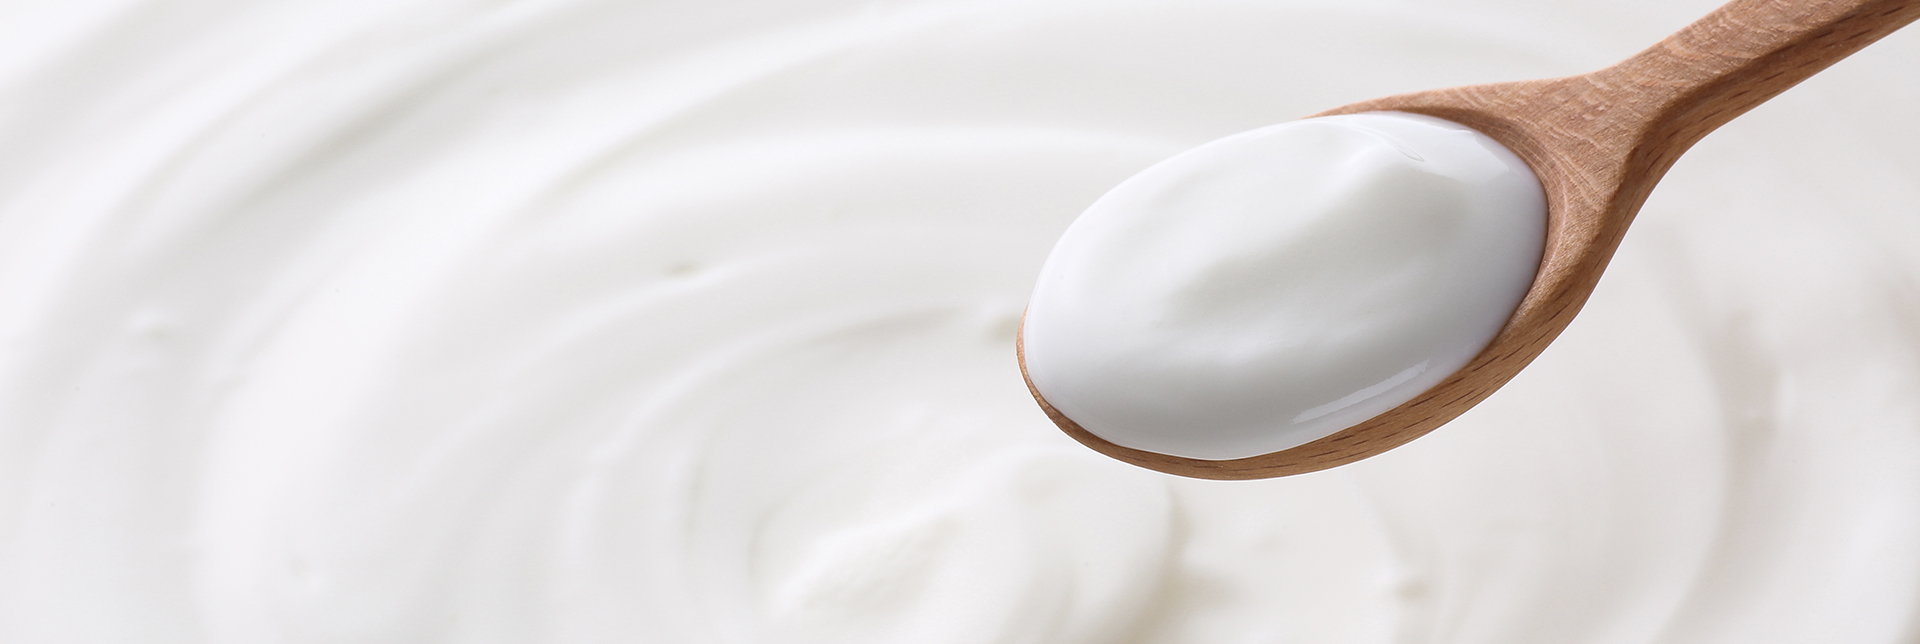 La química detrás de la fermentación del yogur 